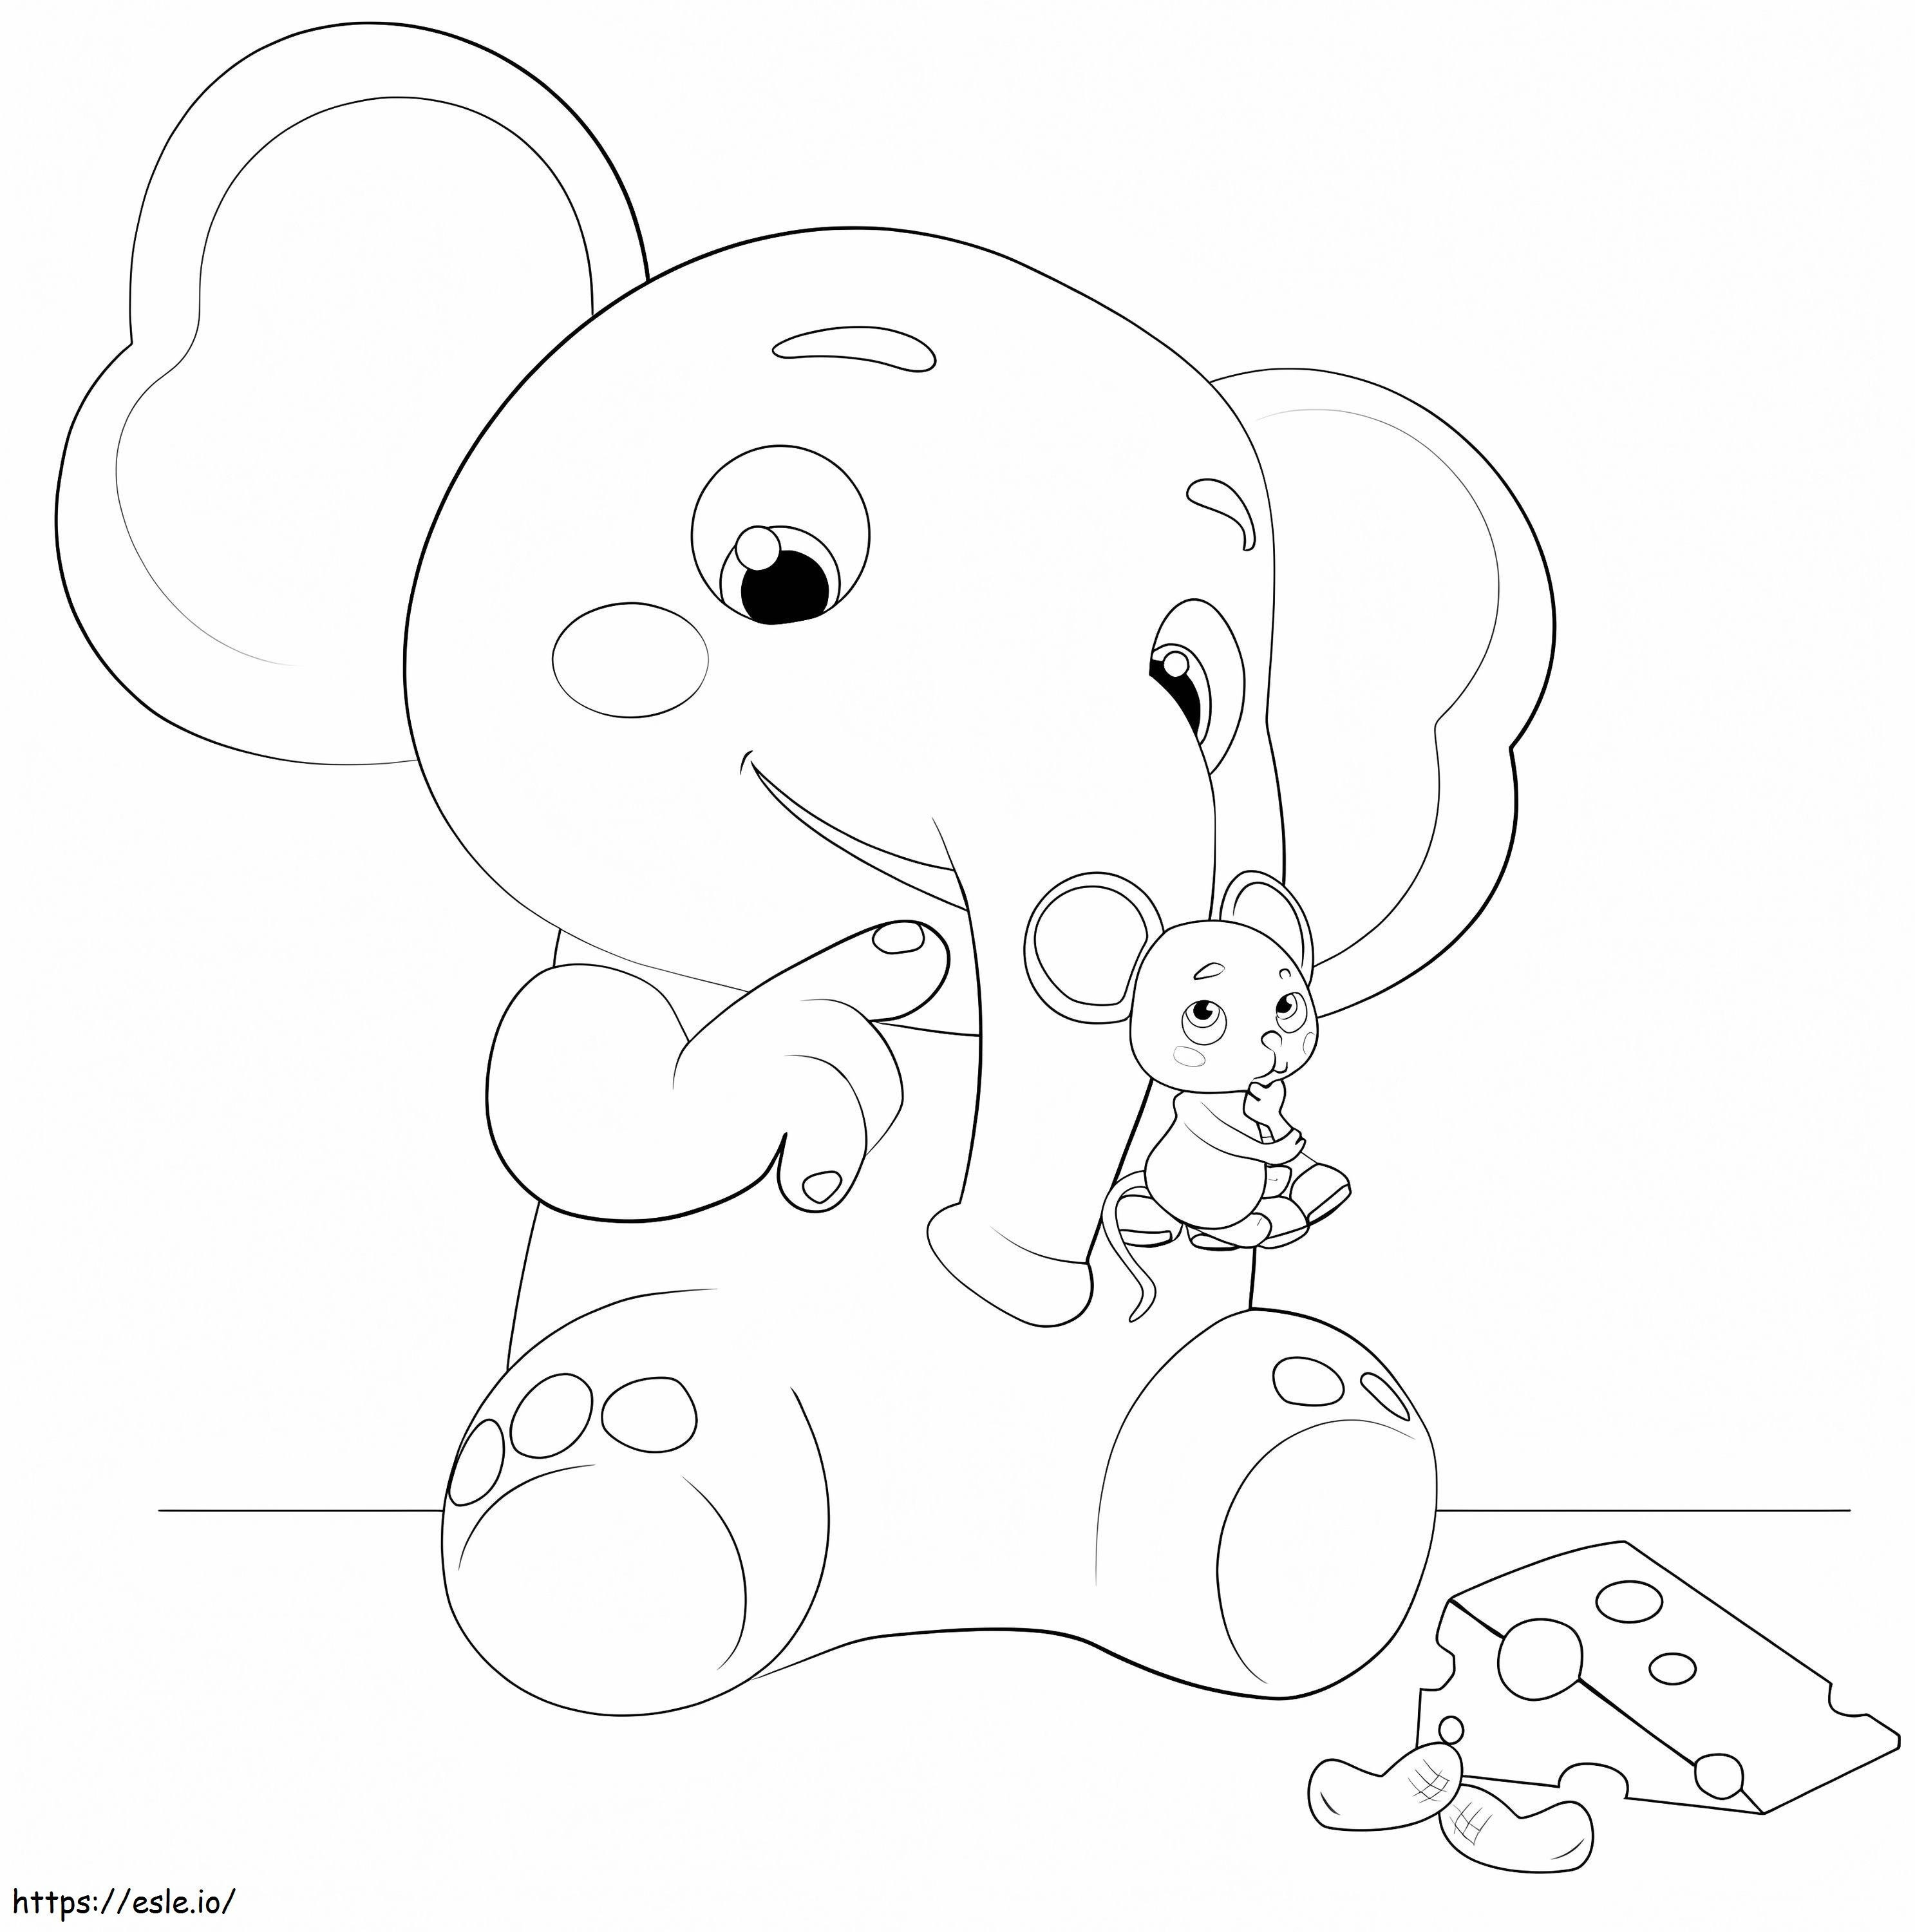 Coloriage Éléphant de cocomelon à imprimer dessin